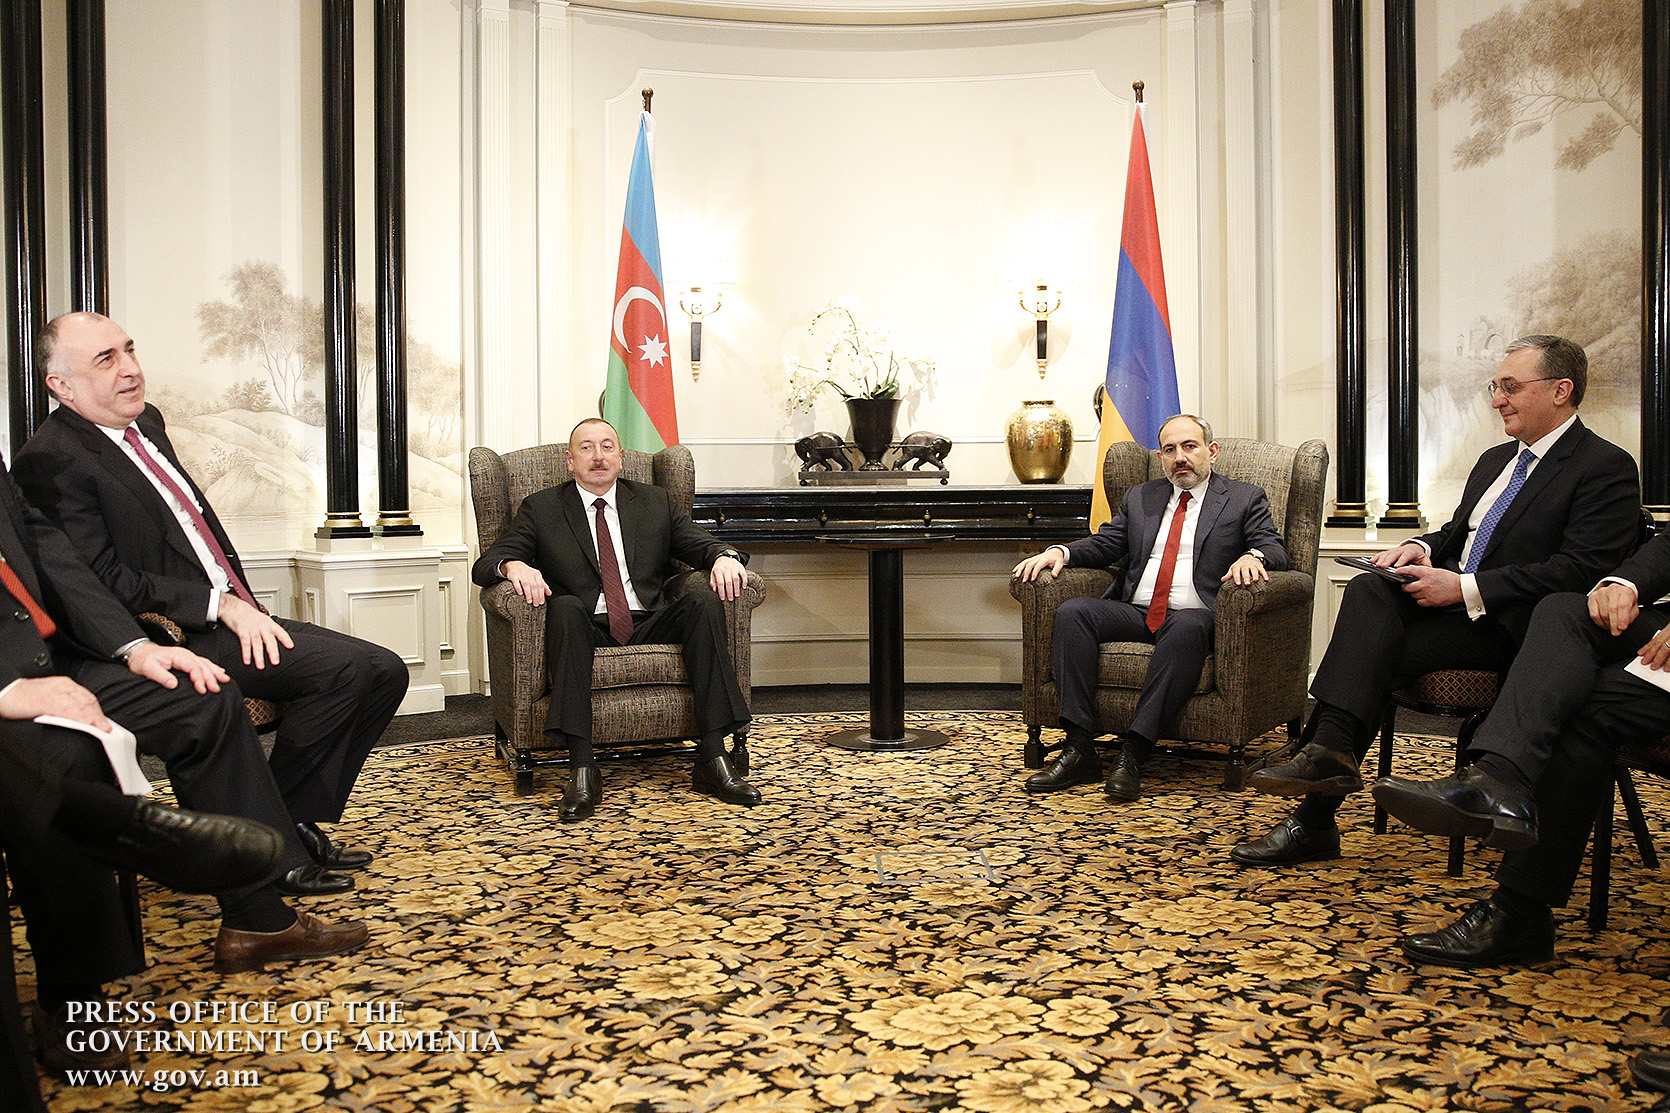 Никол Пашинян и Ильхам Алиев проводят встречу за закрытыми дверями в Вене (видео)